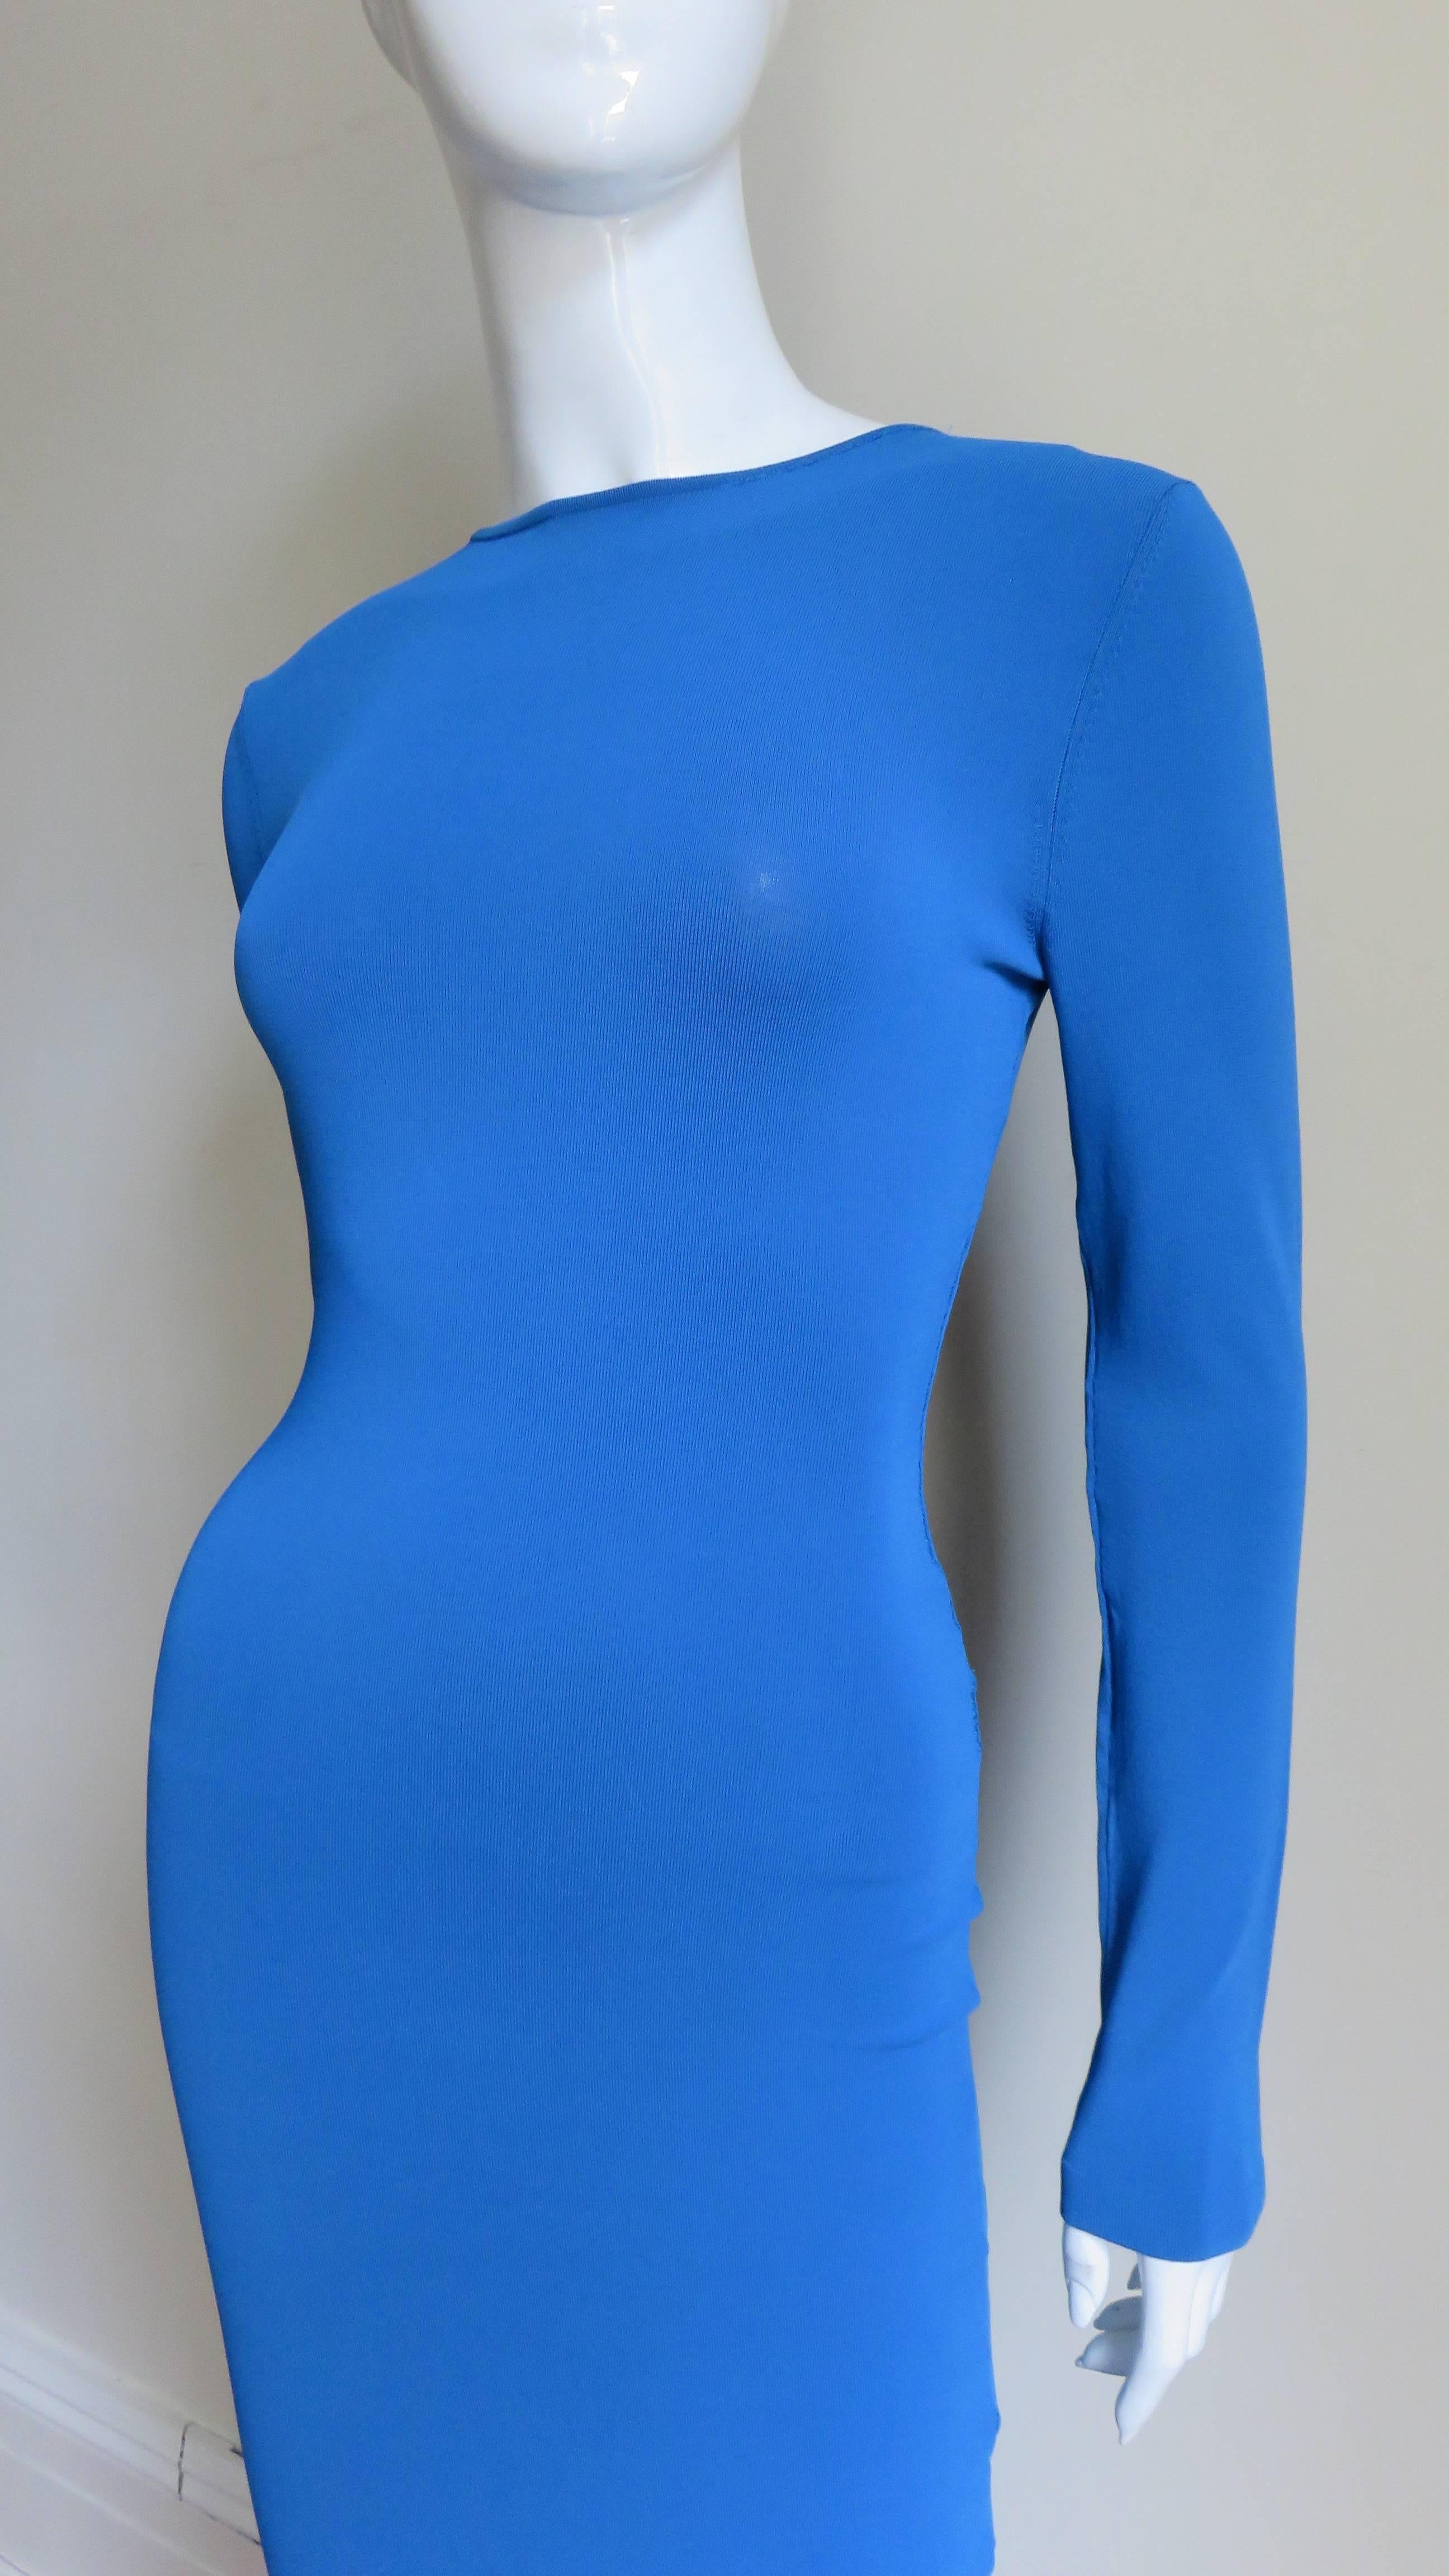 Blue Alexander McQueen Body Conscious Chain Dress